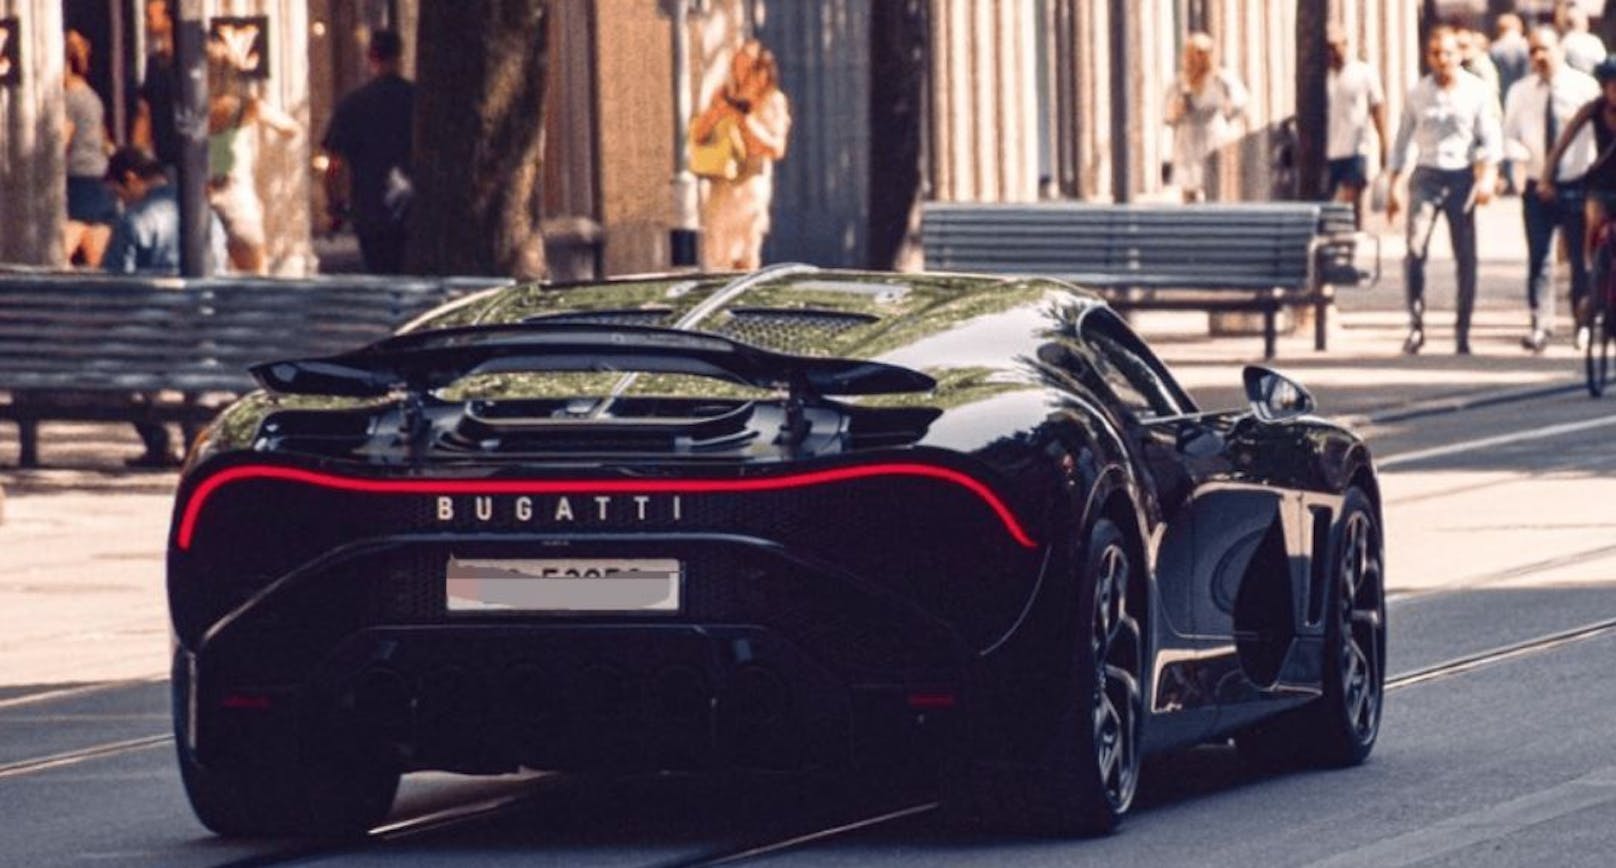 Der Bugatti La Voiture Noire gilt nach der Steuerabrechnung mit gut 17 Millionen Franken als das teuerste Auto der Welt.